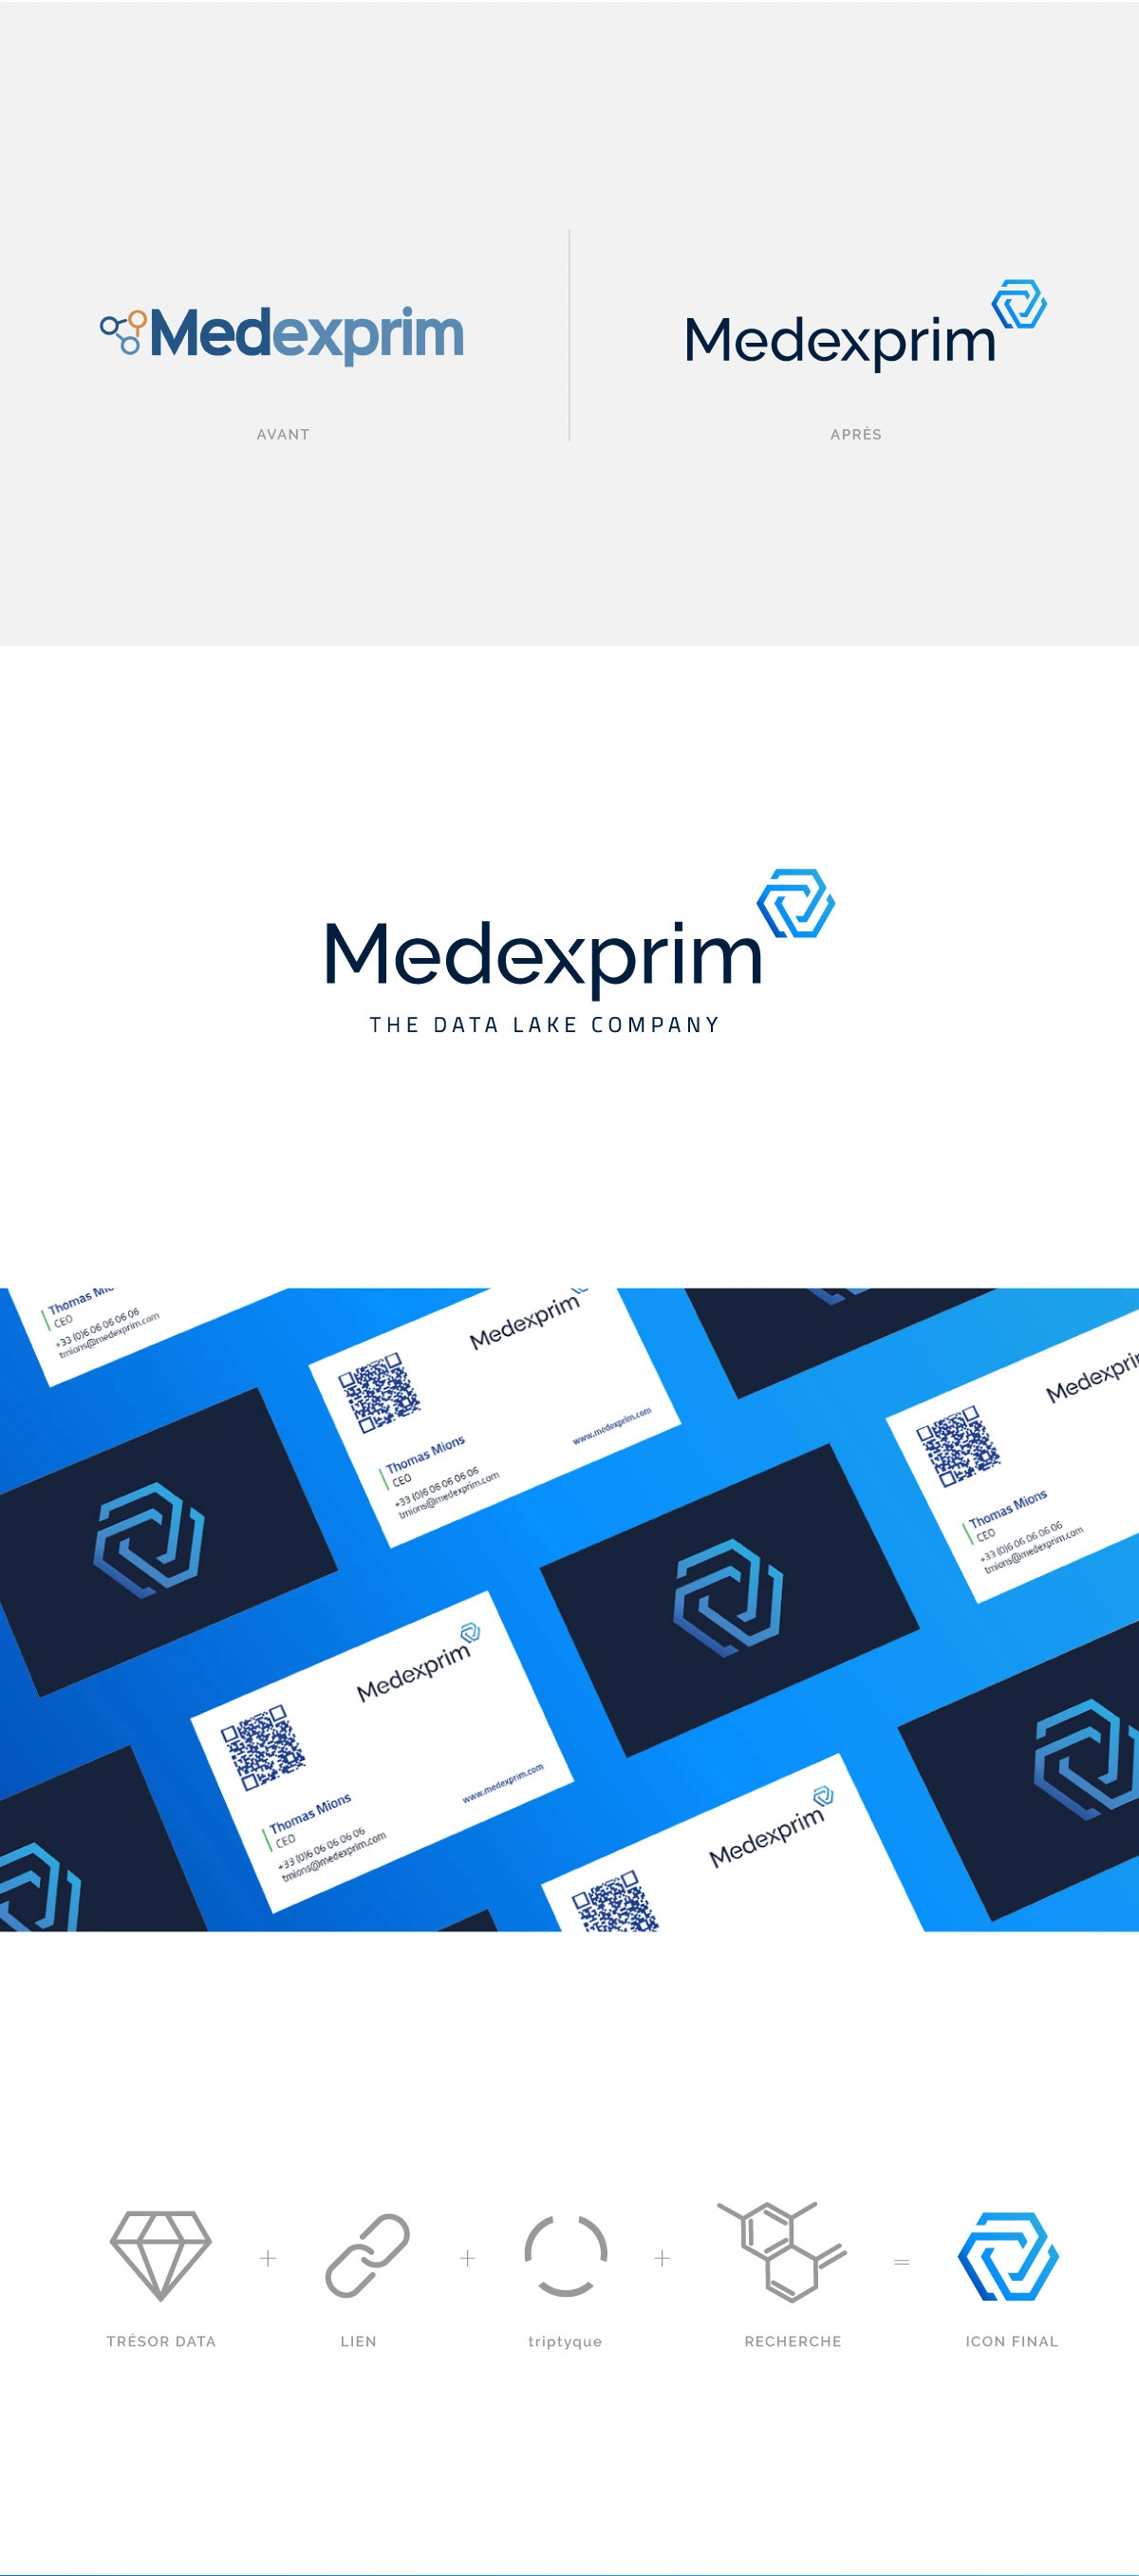 Agence Comete création Identité de marque : Logo / Identité marque pour Medexprim